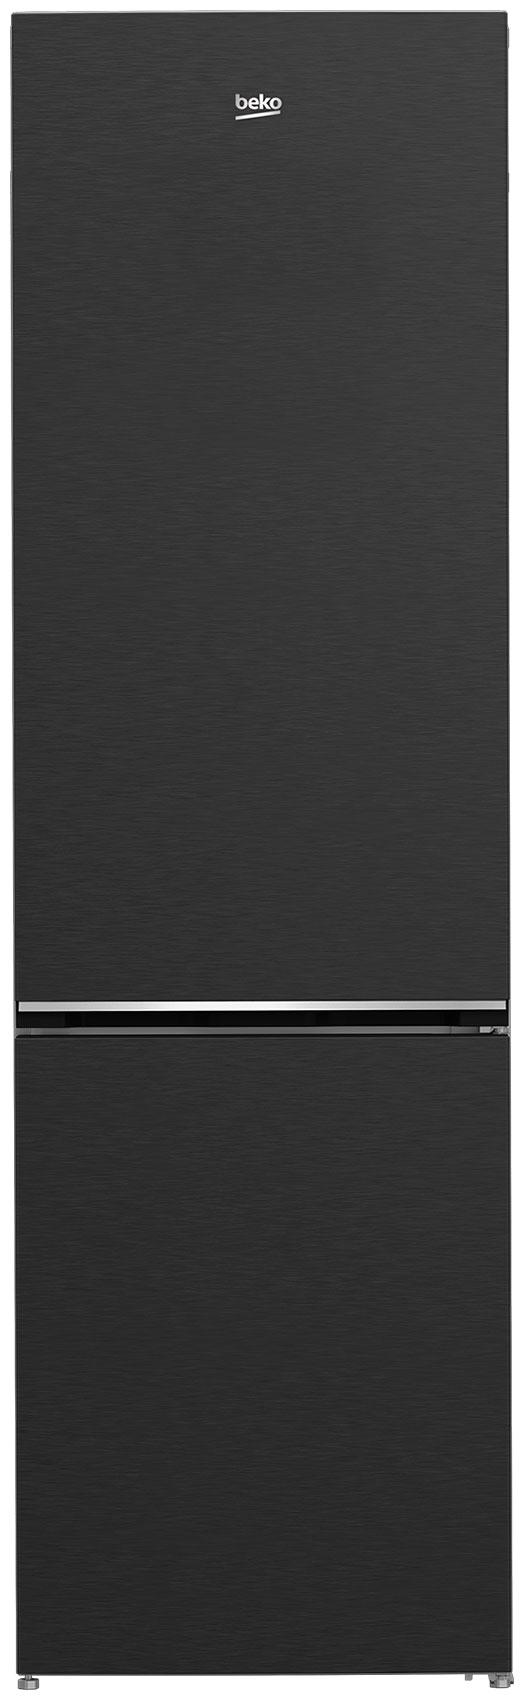 Двухкамерный холодильник Beko B1DRCNK402HXBR холодильник двухкамерный beko rcnk310kc0w 184x60x54см 1 компрессор цвет белый